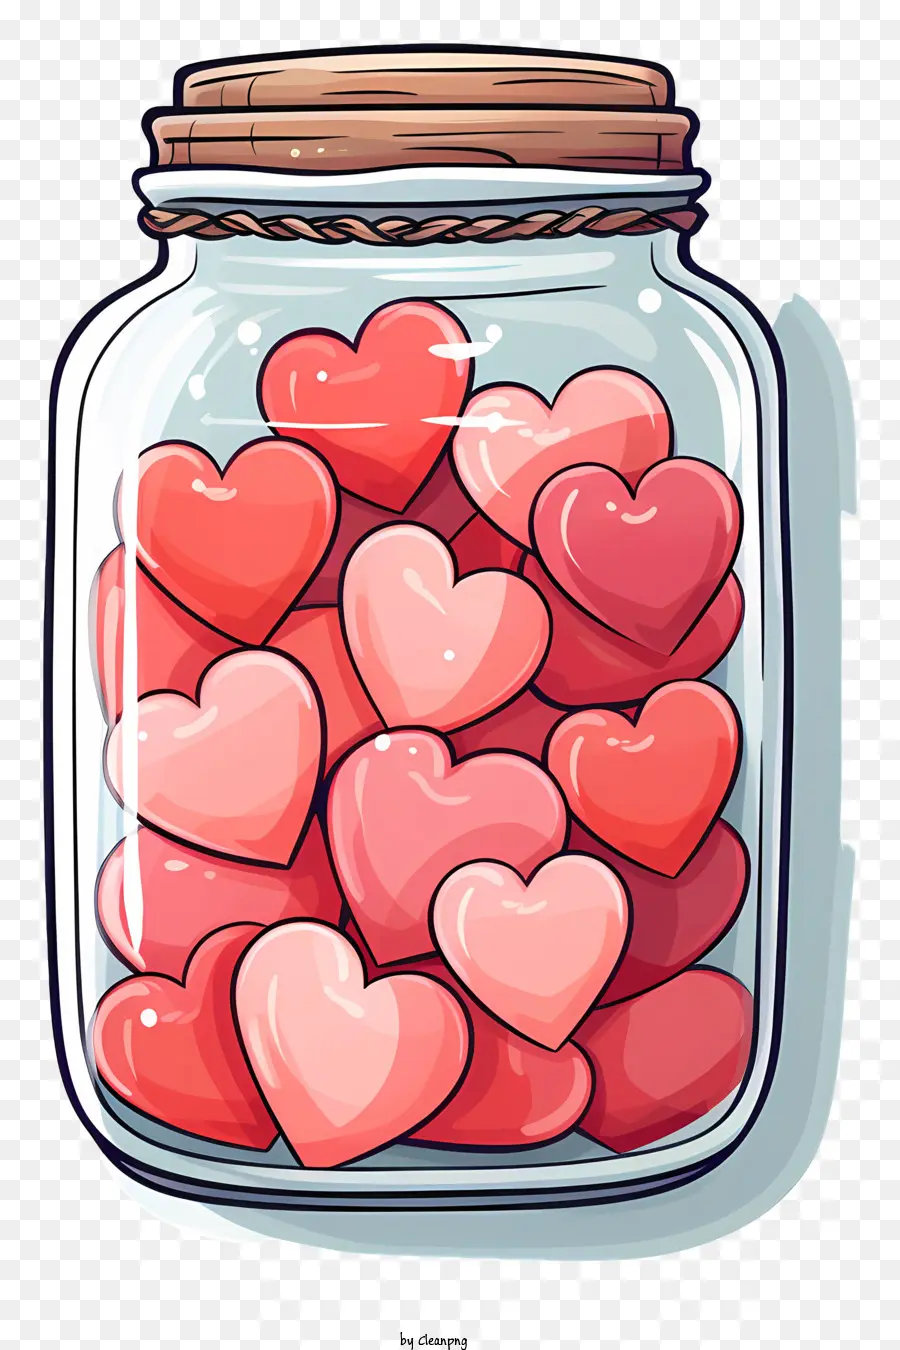 Mason Jar Glass Jar Jar Kiced Kicdies Kẹo bằng gỗ Tay cầm màu hồng - Lọ thủy tinh với kẹo hình trái tim, tay cầm bằng gỗ